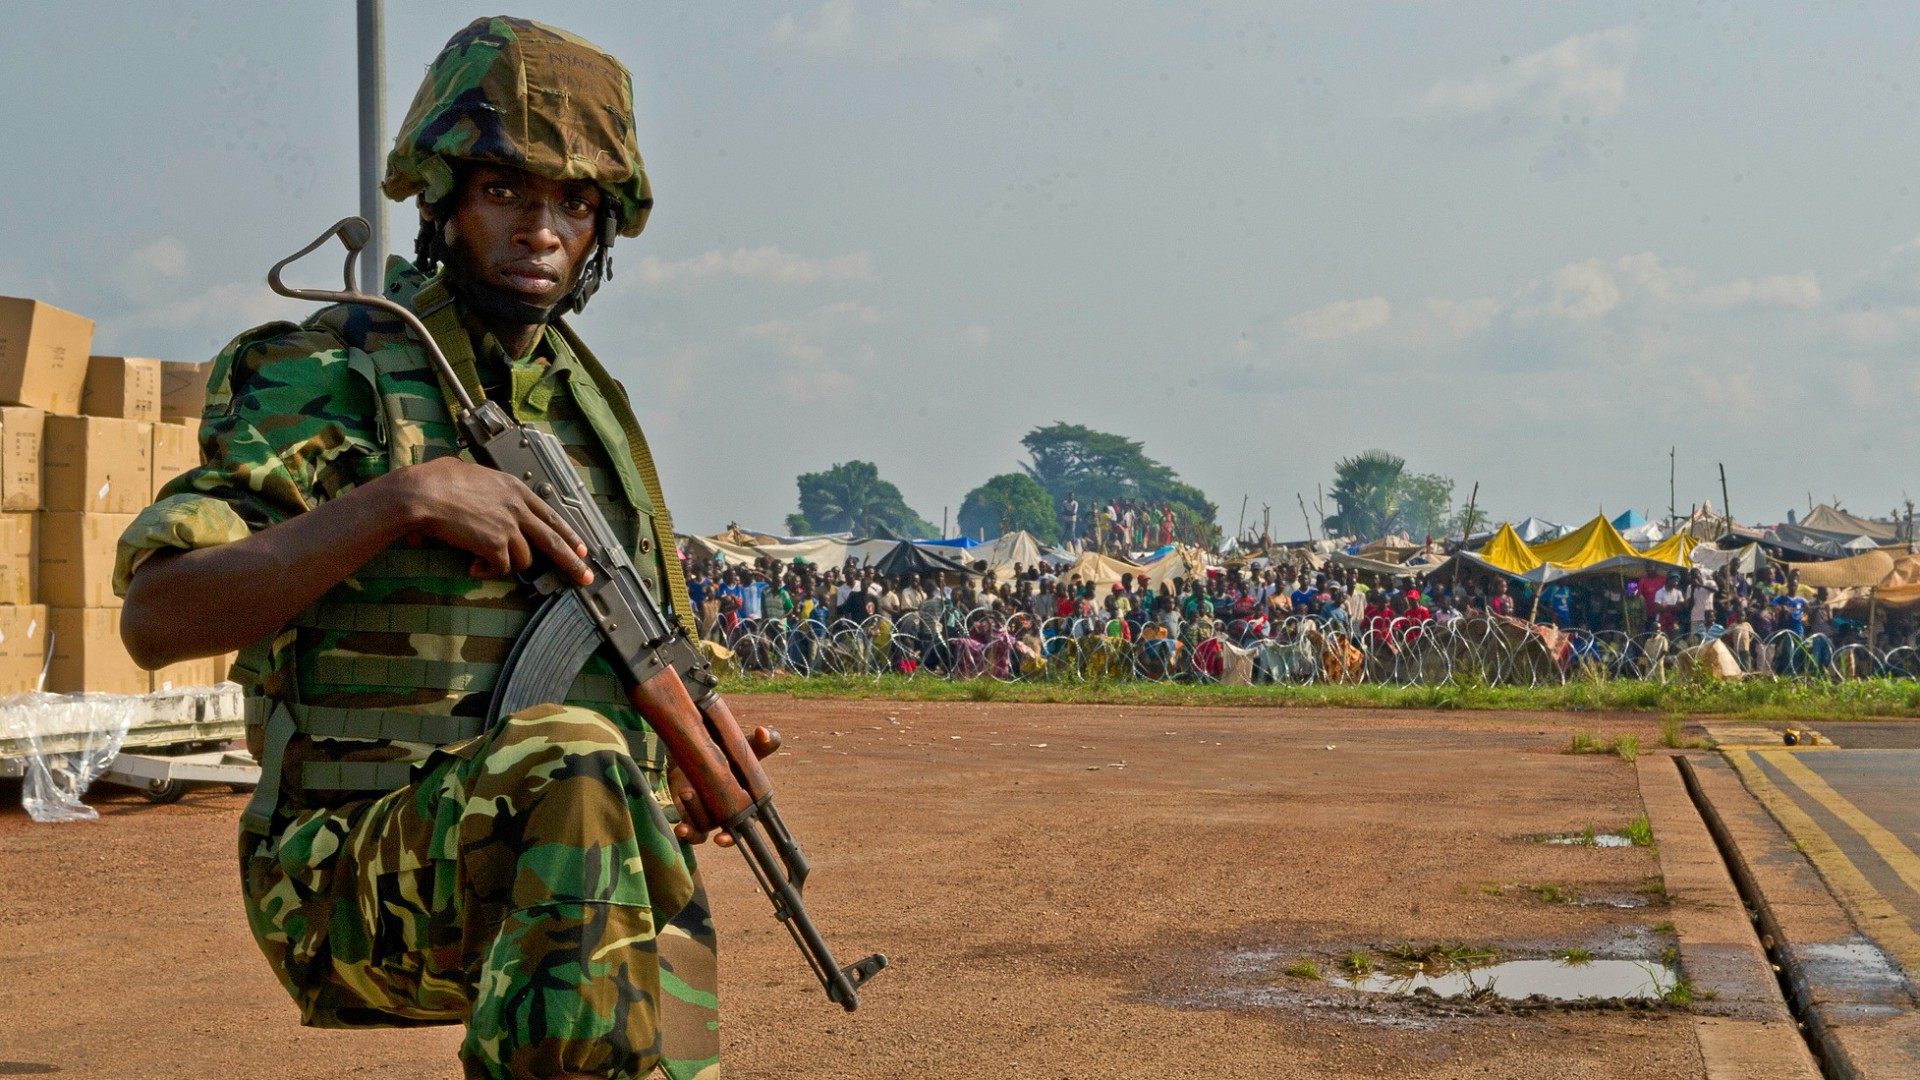 La violence est encore très présente en République centrafricaine (Photo:US Army Africa/Flickr/CC BY 2.0)